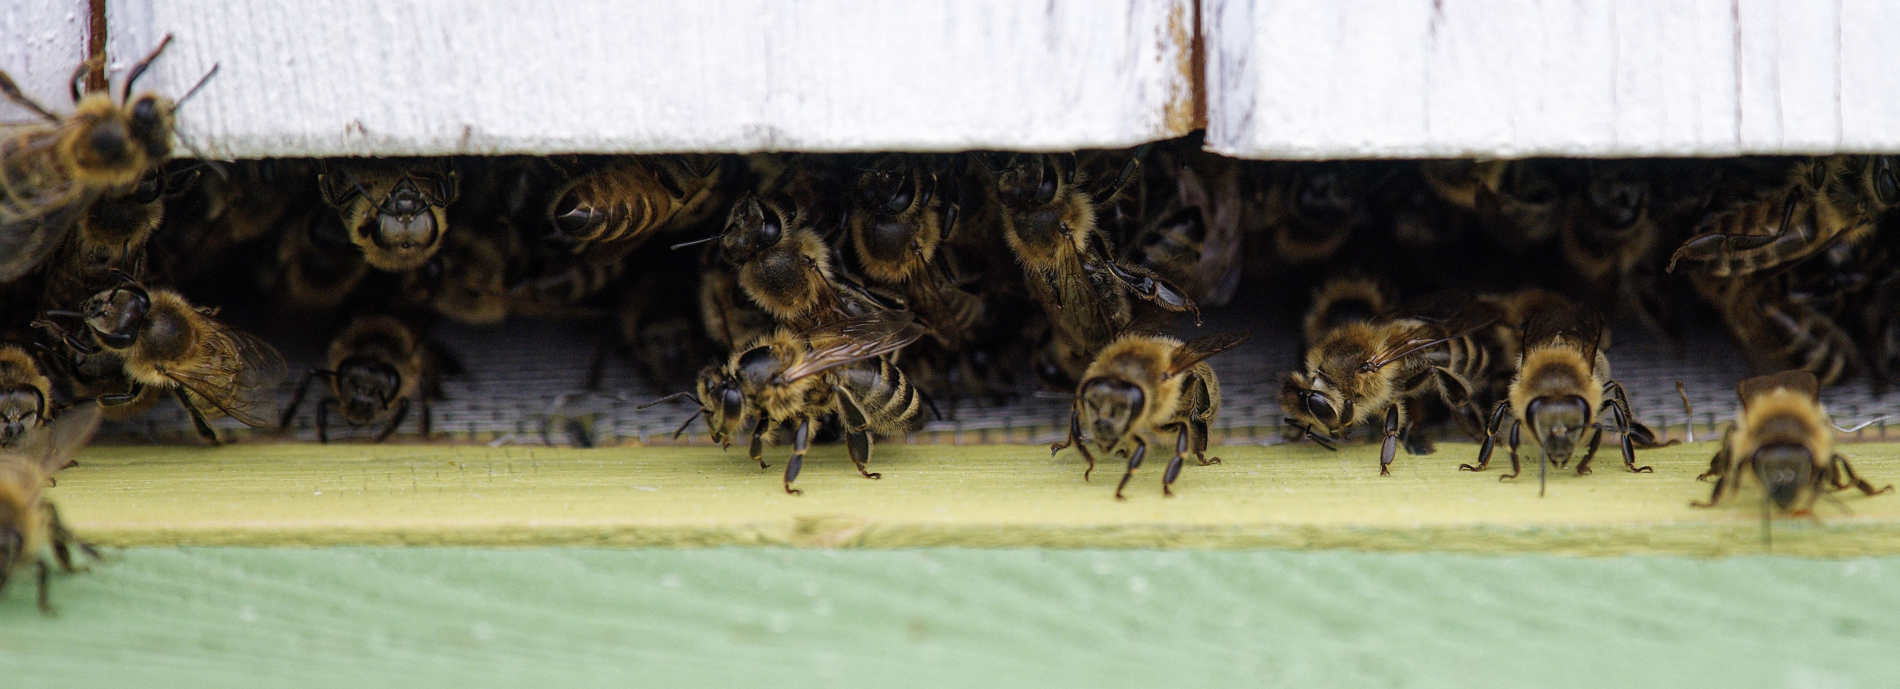 Pszczoły na wylotce - zdjęcie